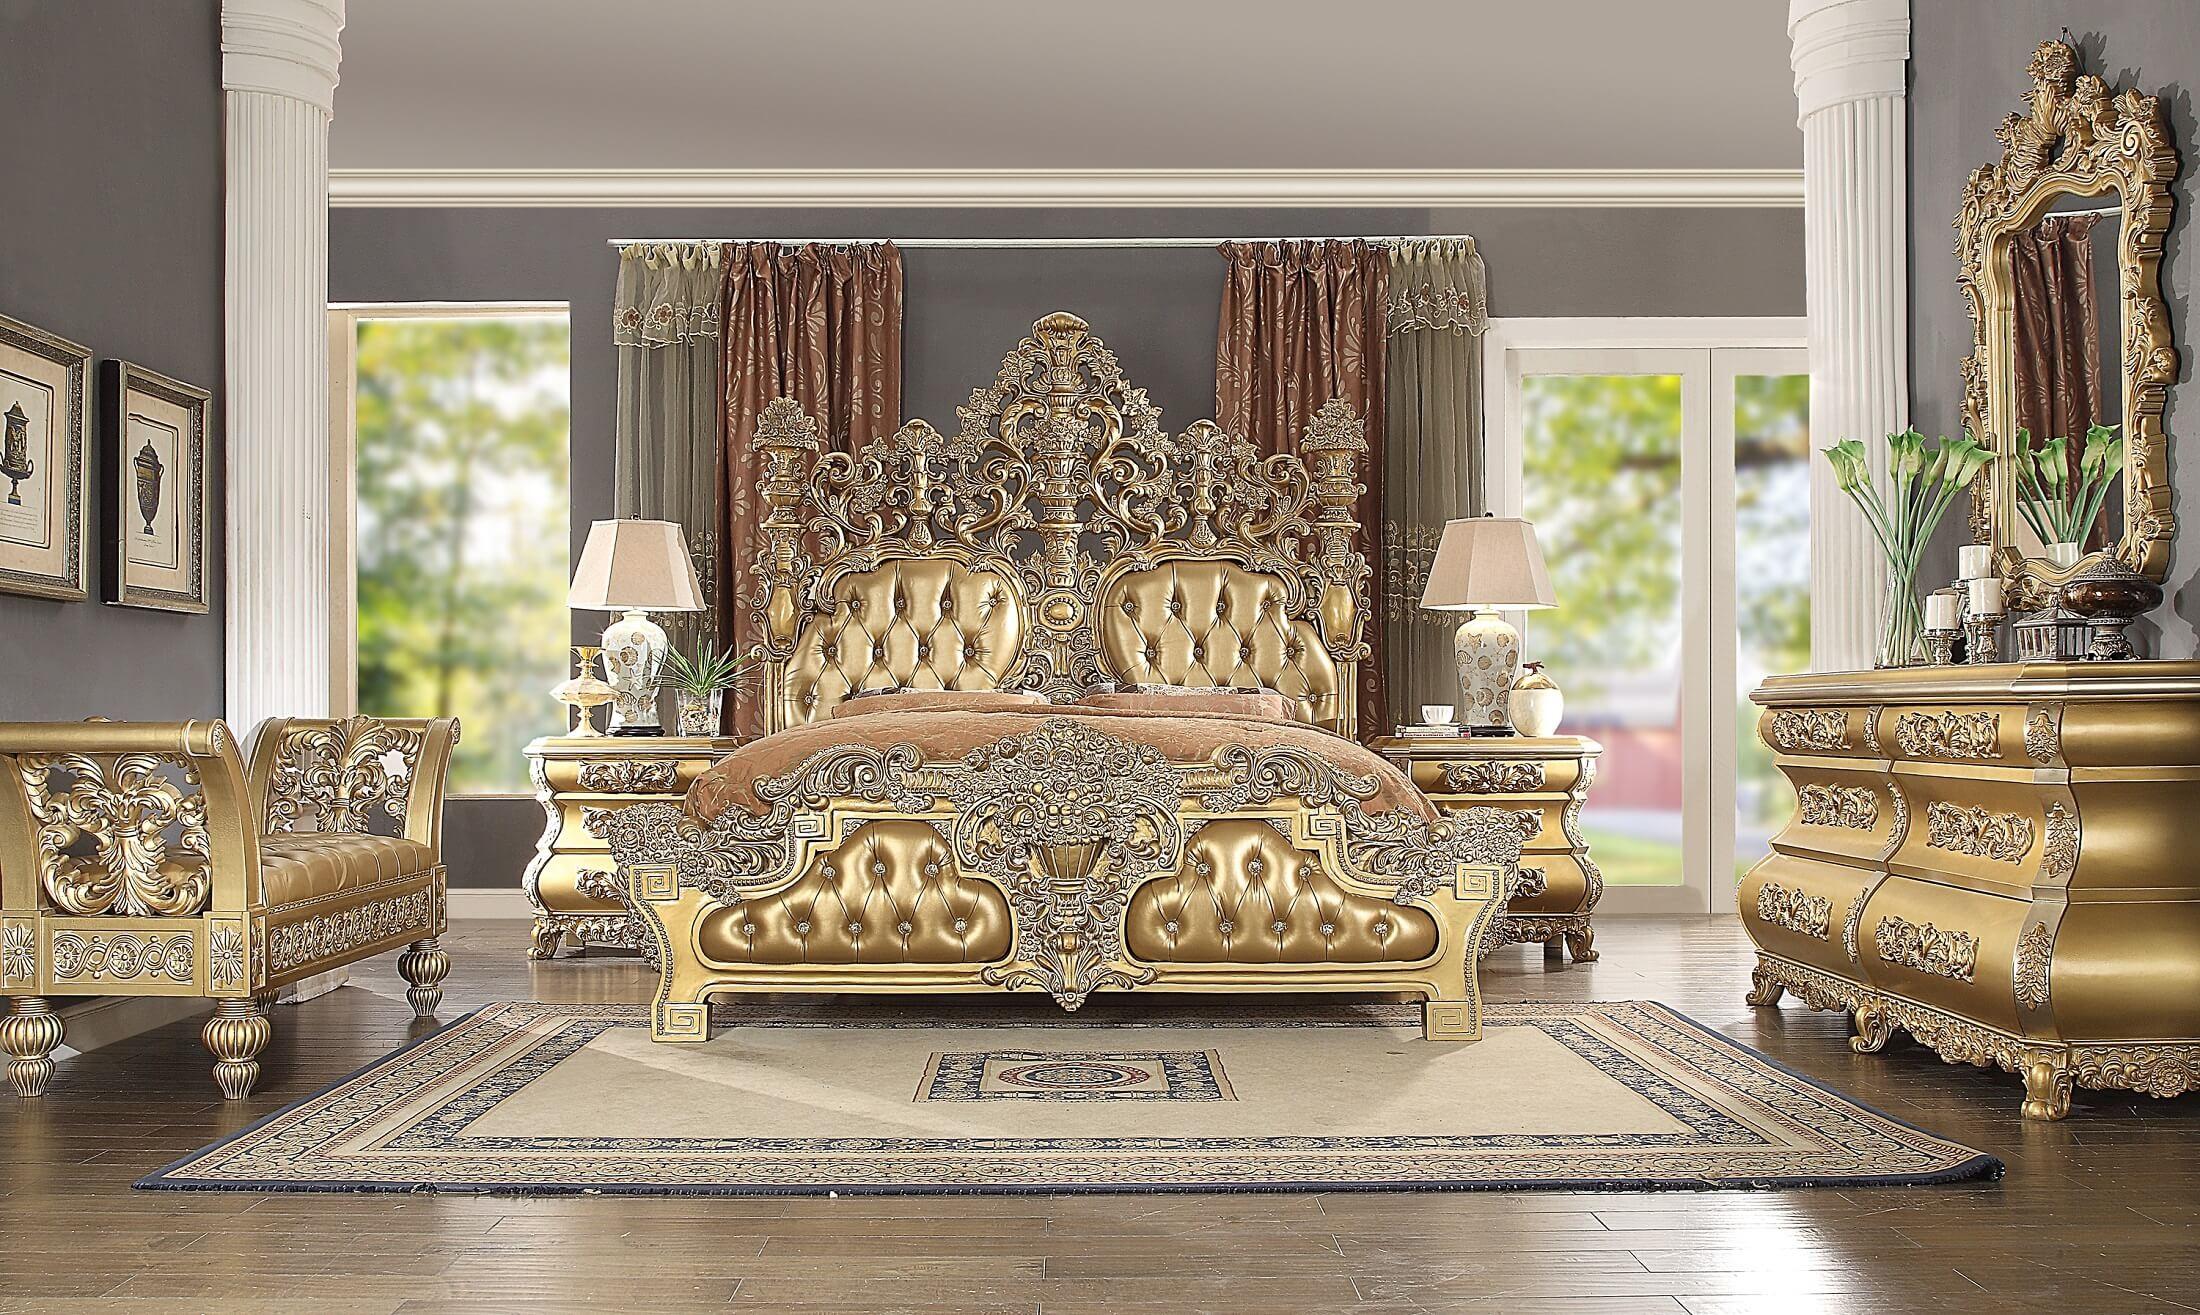 

    
Royal Gold KING Bedroom Set 3Pcs Carved Wood Seville BD00451EK ACME Traditional
